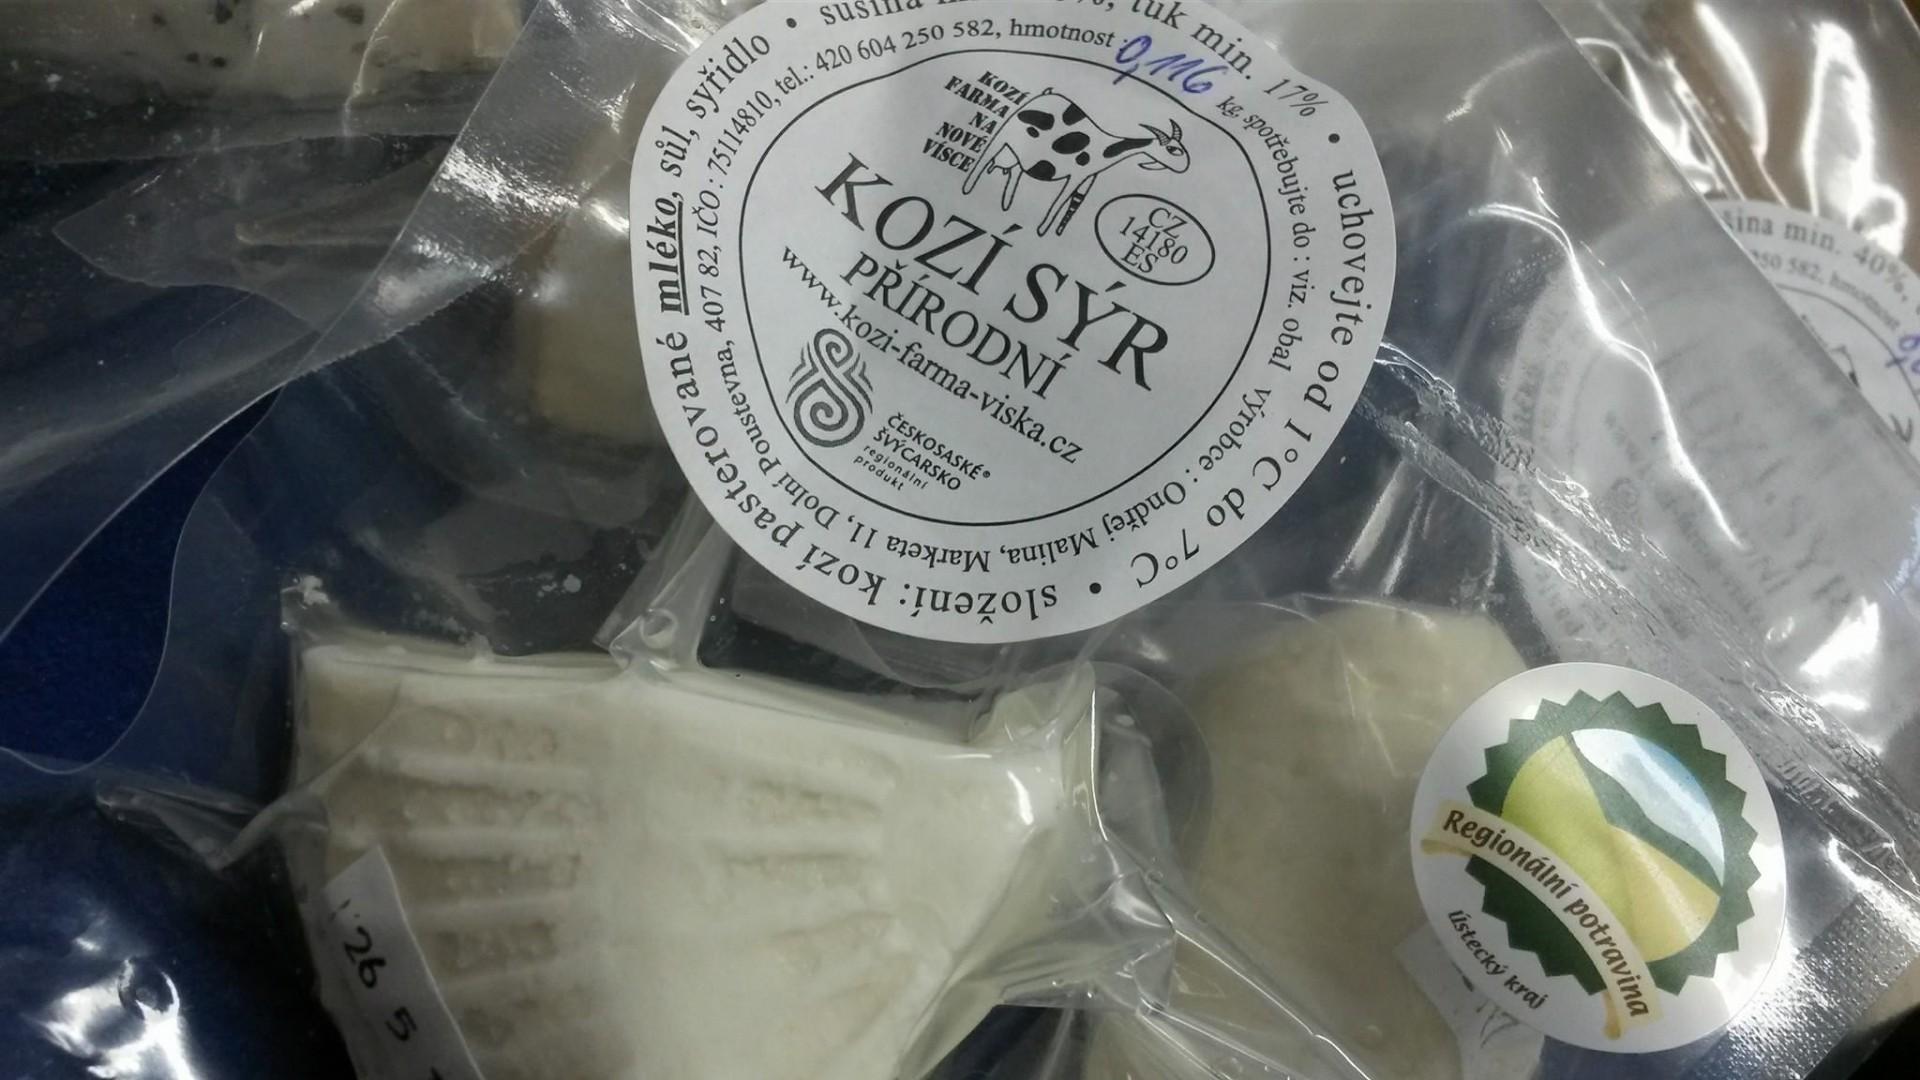 Kozí sýr - Kozí farma Nová Víska